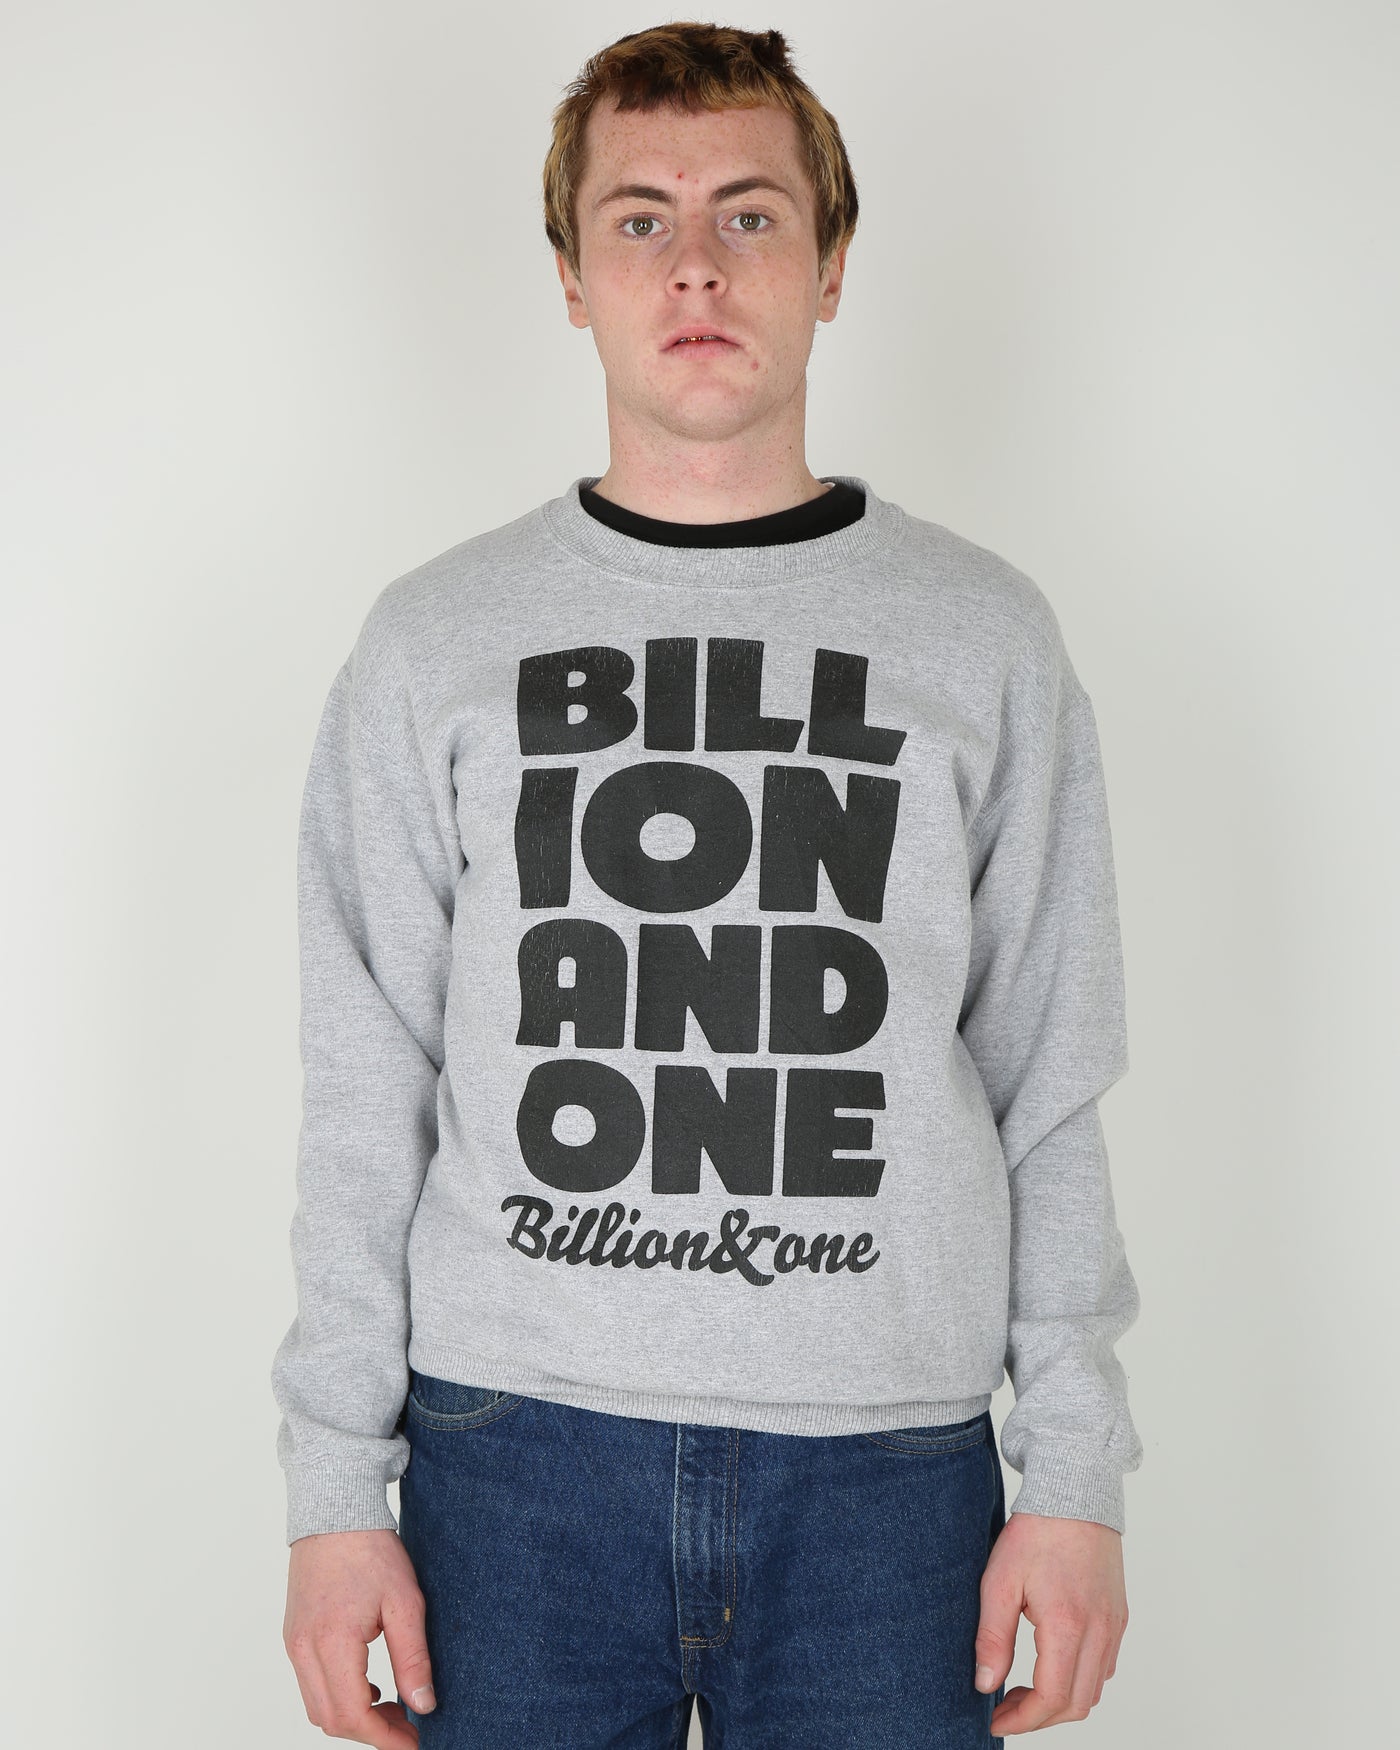 Vintage Billion&one graphic sweatshirt - S